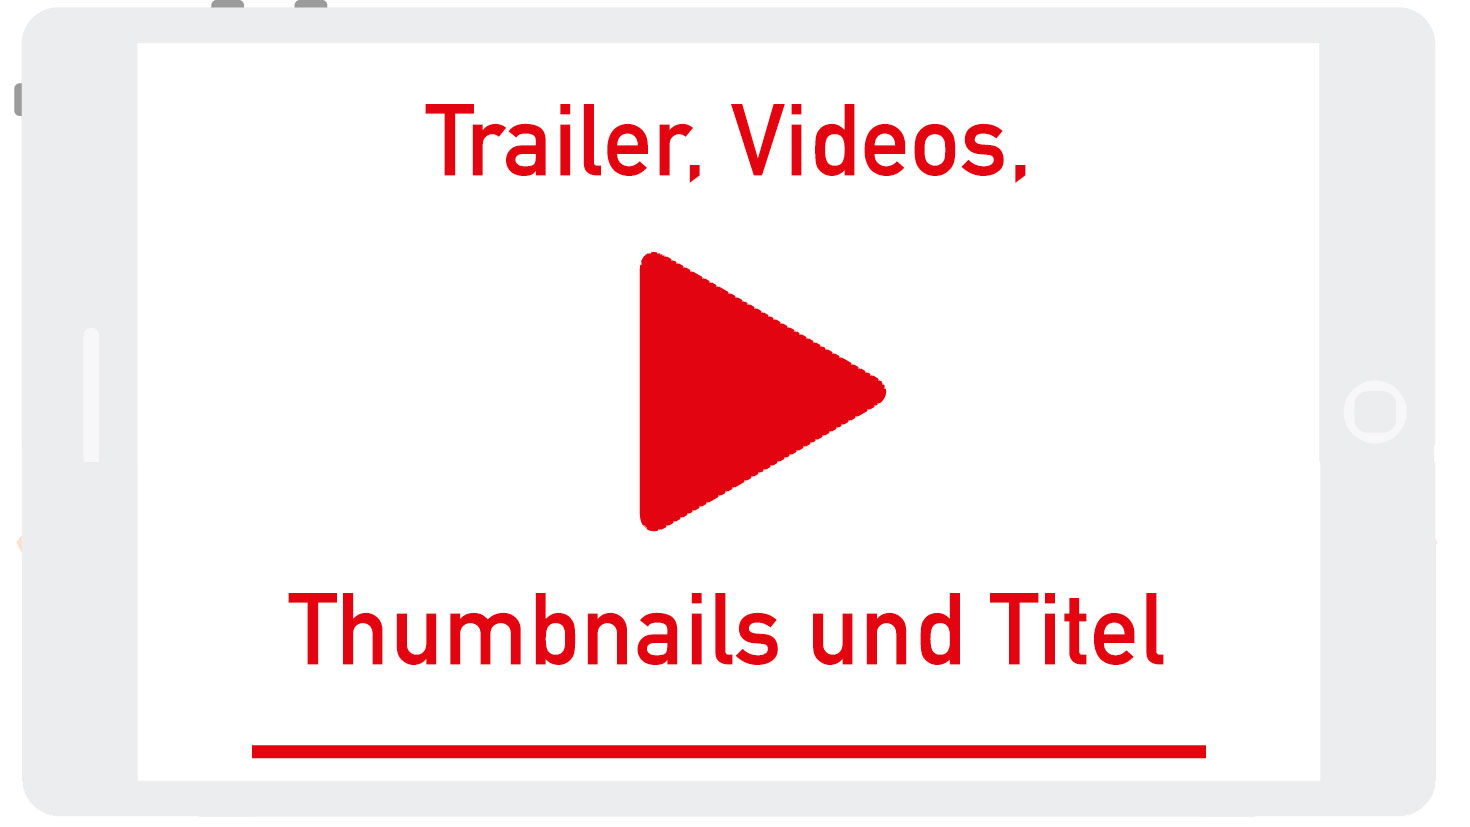 Trailer, Videos, Thumbnails und Titel.